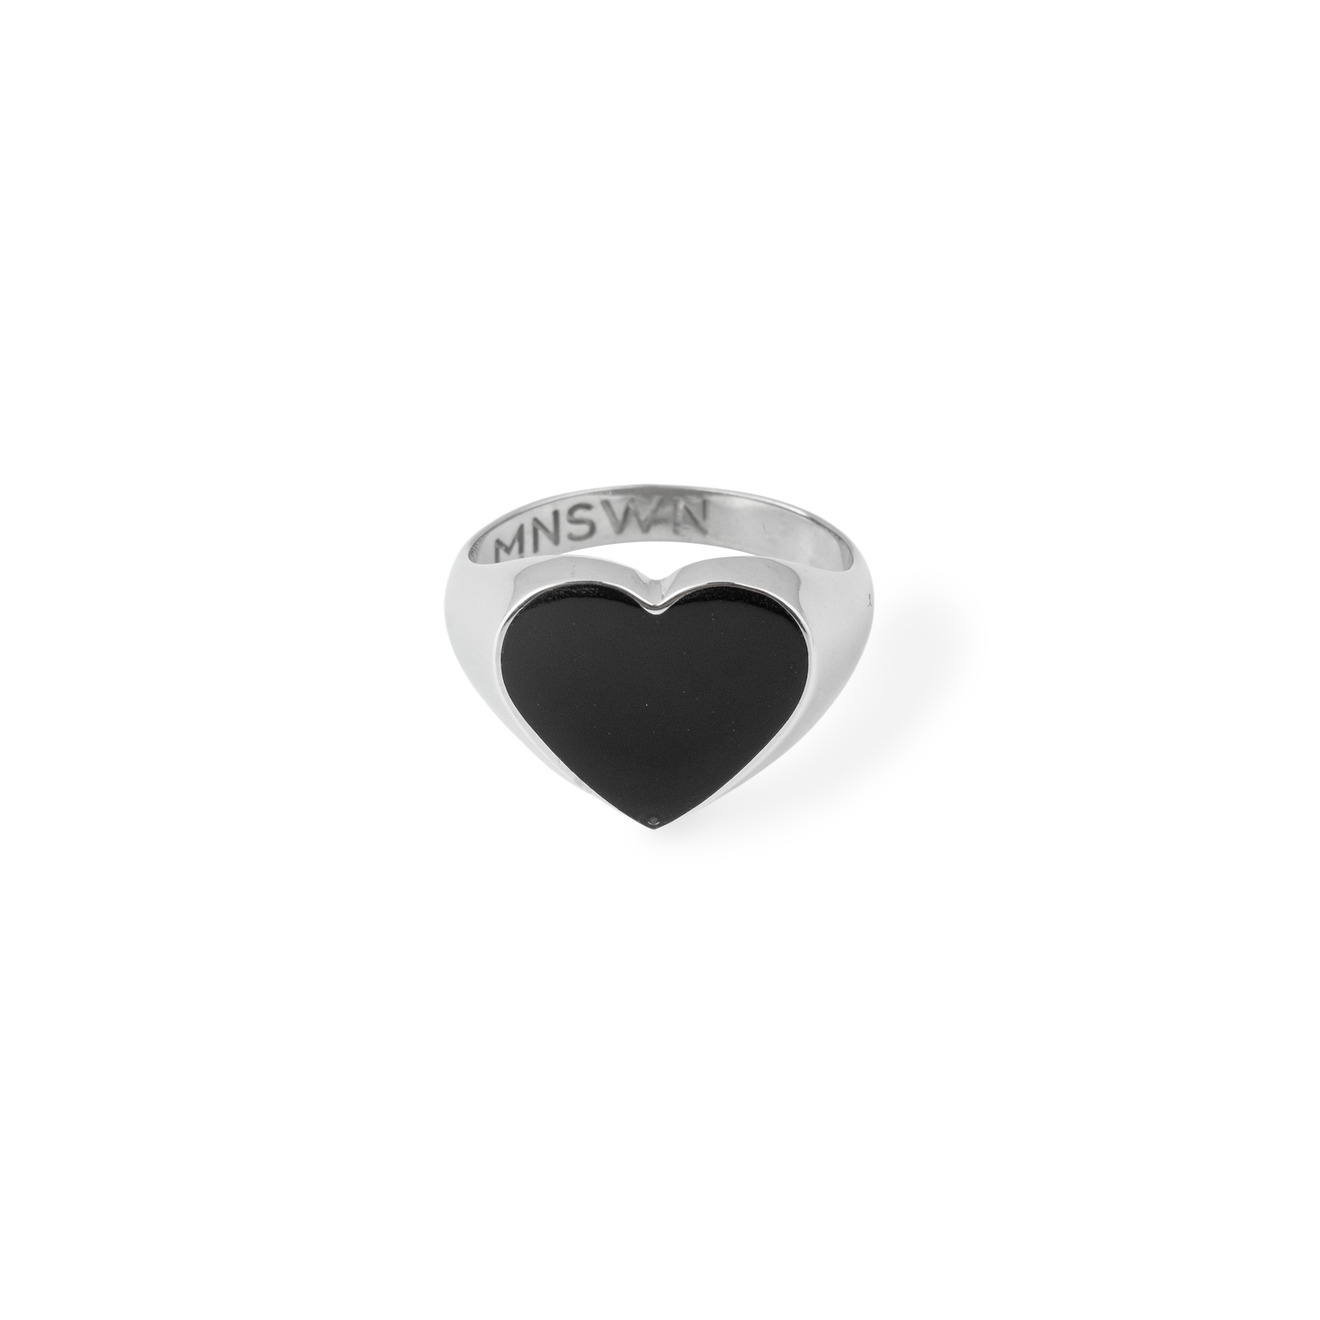 Moonswoon Кольцо-печатка из серебра с черным сердцем moonswoon широкое кольцо из серебра с ониксом